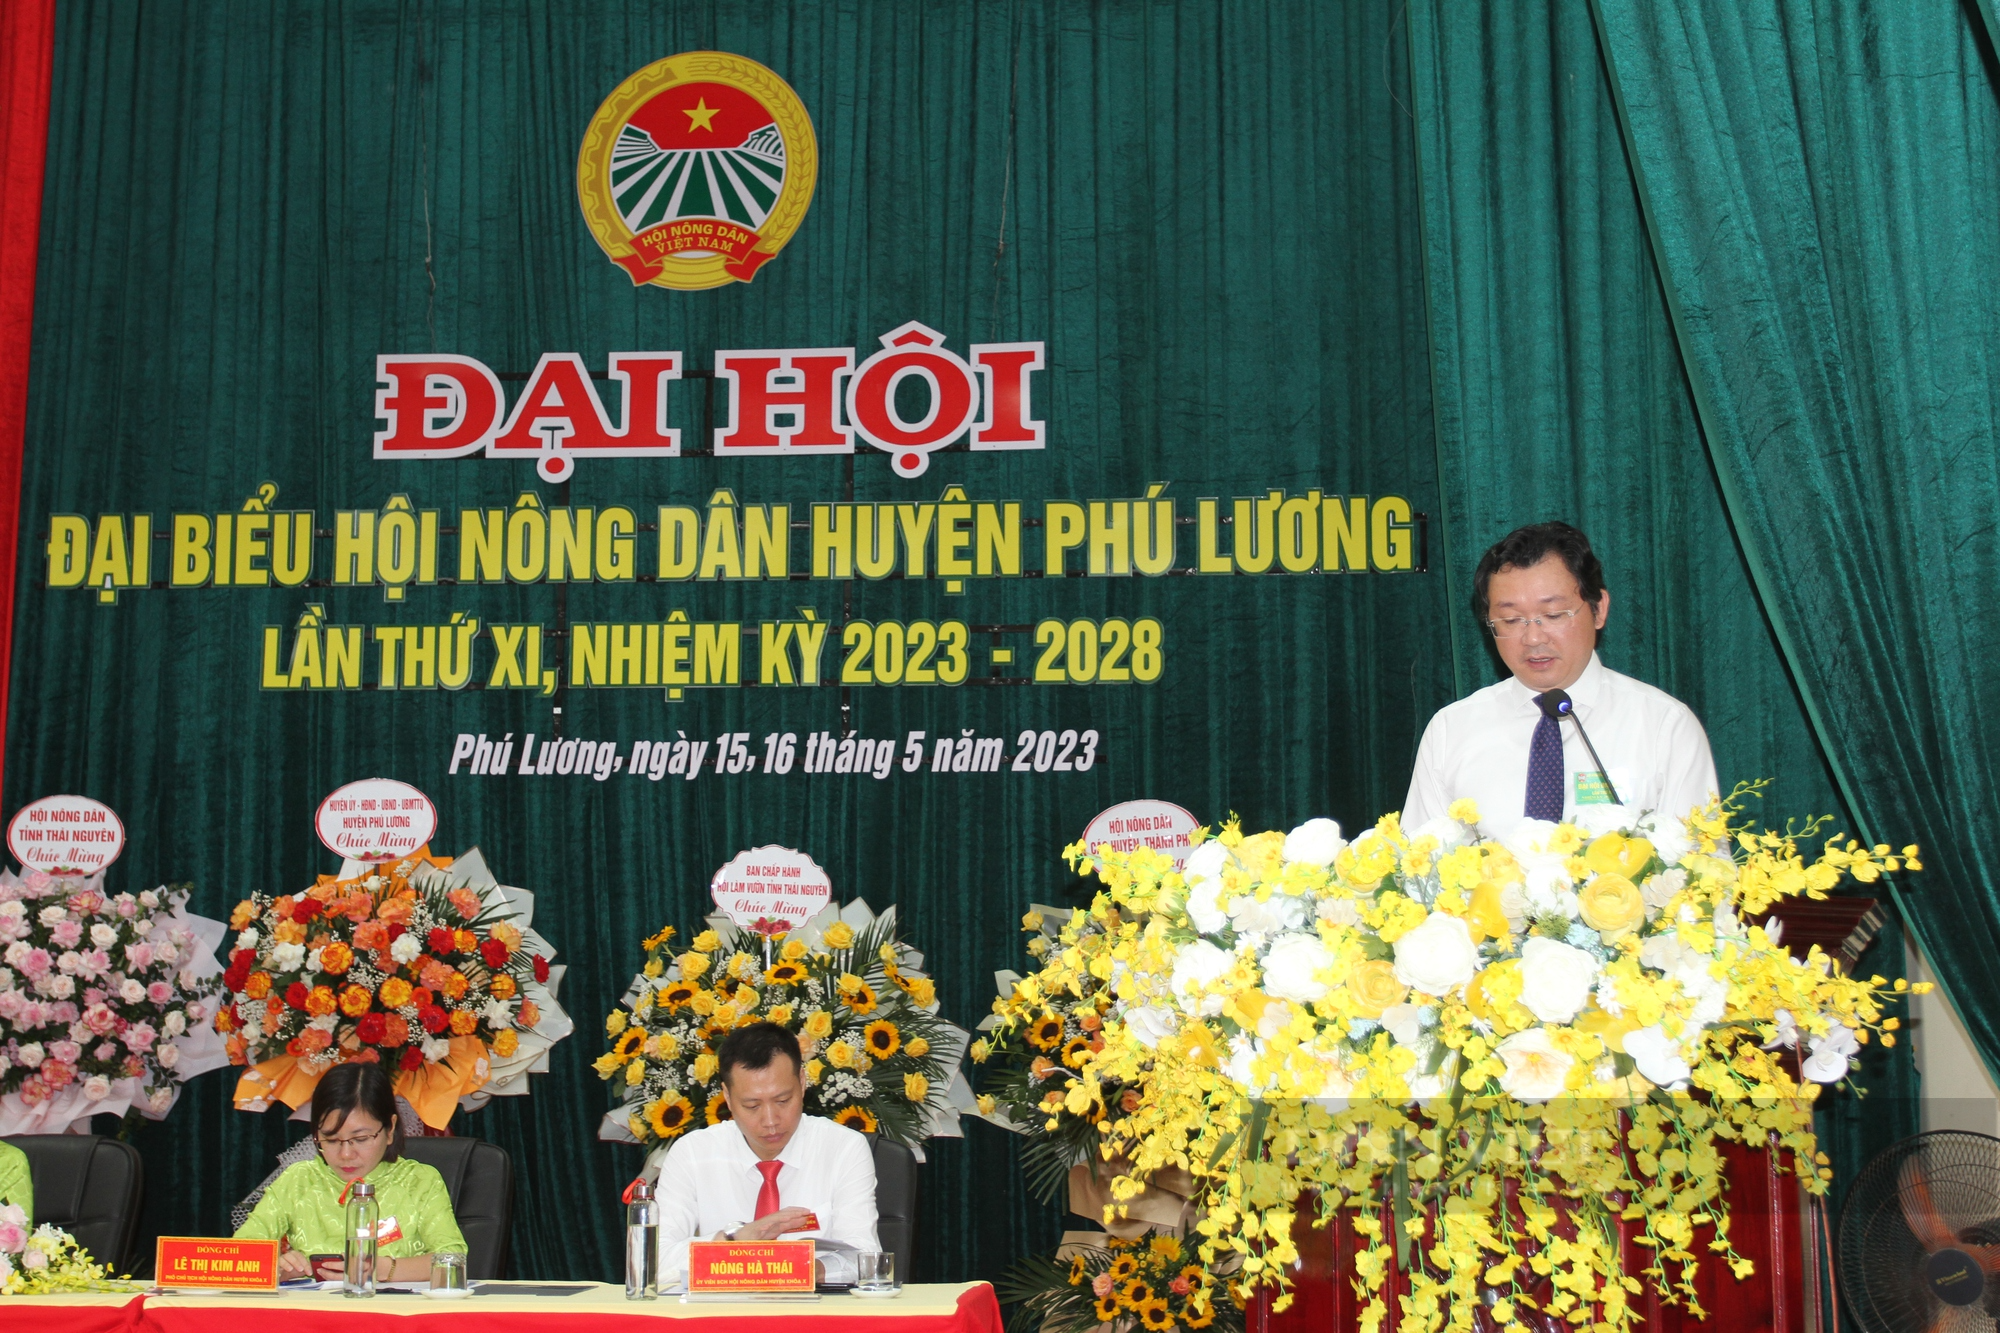 Đại hội Hội Nông dân huyện Phú Lương nhiệm kỳ 2023 – 2028: Bà Trịnh Ngọc Trà tái đắc cử chức danh Chủ tịch - Ảnh 3.